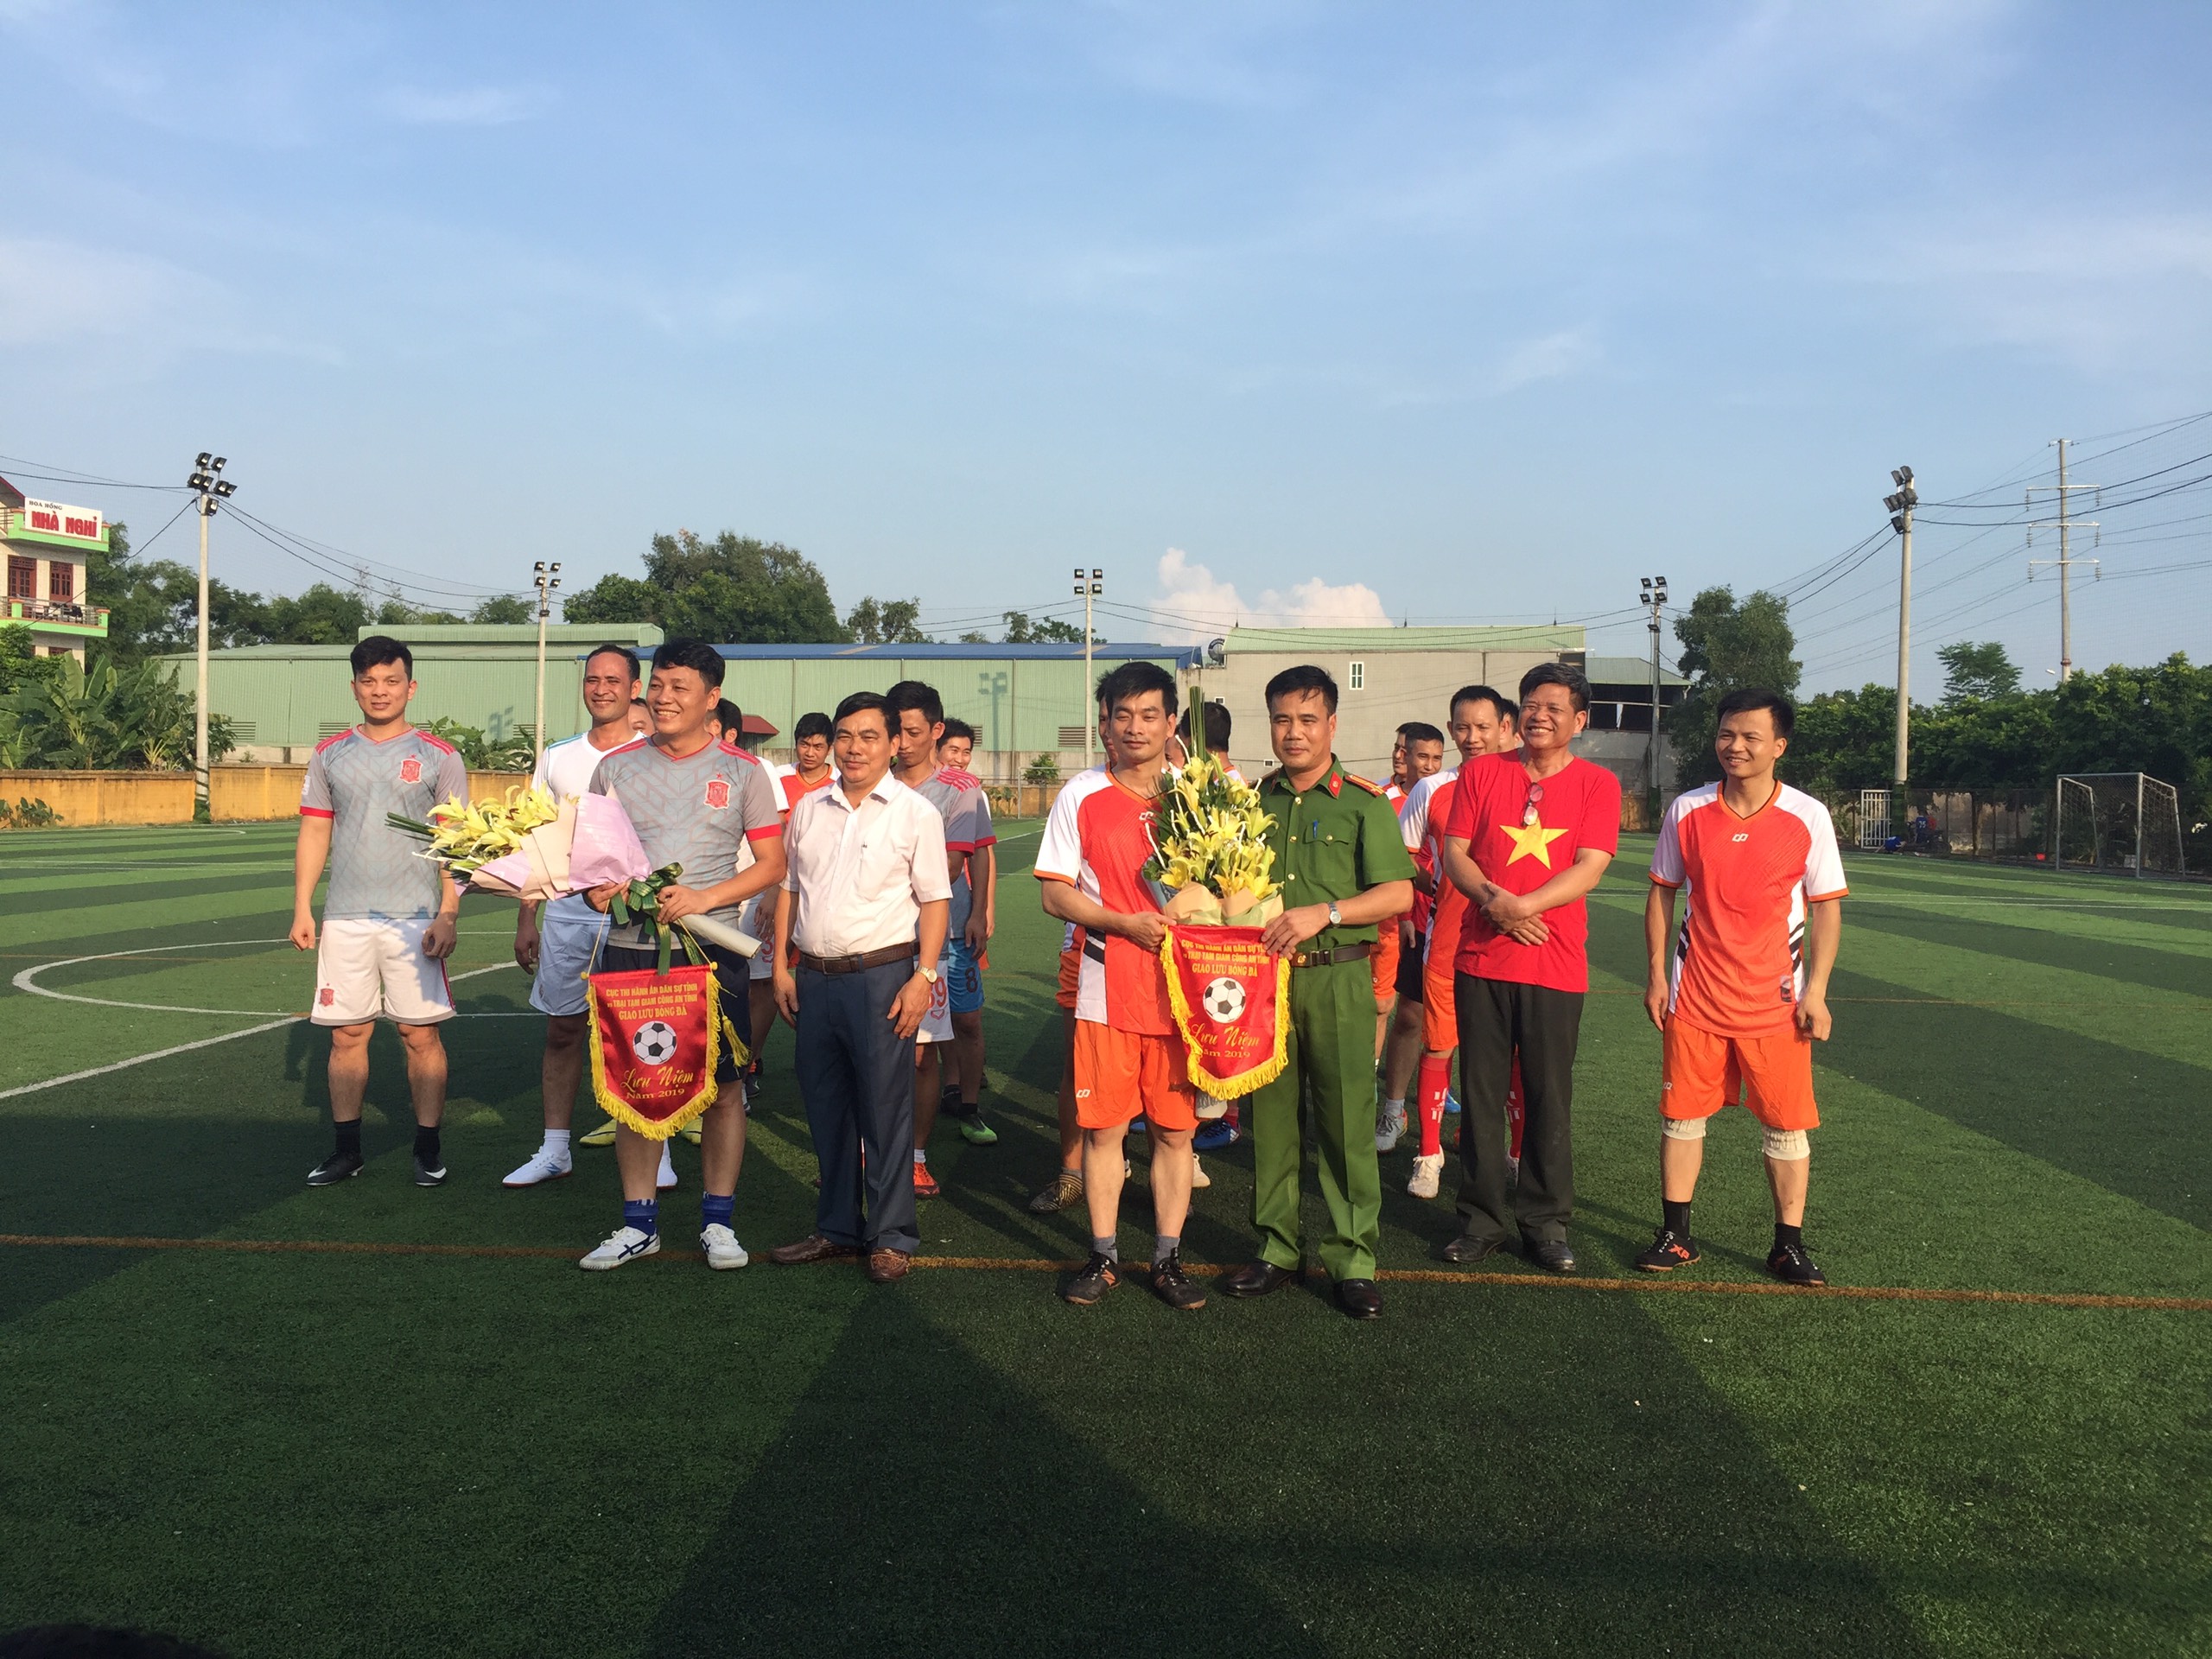 Giao hữu bóng đá giữa Cục THADS tỉnh Bắc Giang  và Trại Tạm giam Công an tỉnh Bắc Giang kỷ niệm ngày truyền thống  ngành Thi hành án dân sự và lực lượng cảnh sát nhân dân